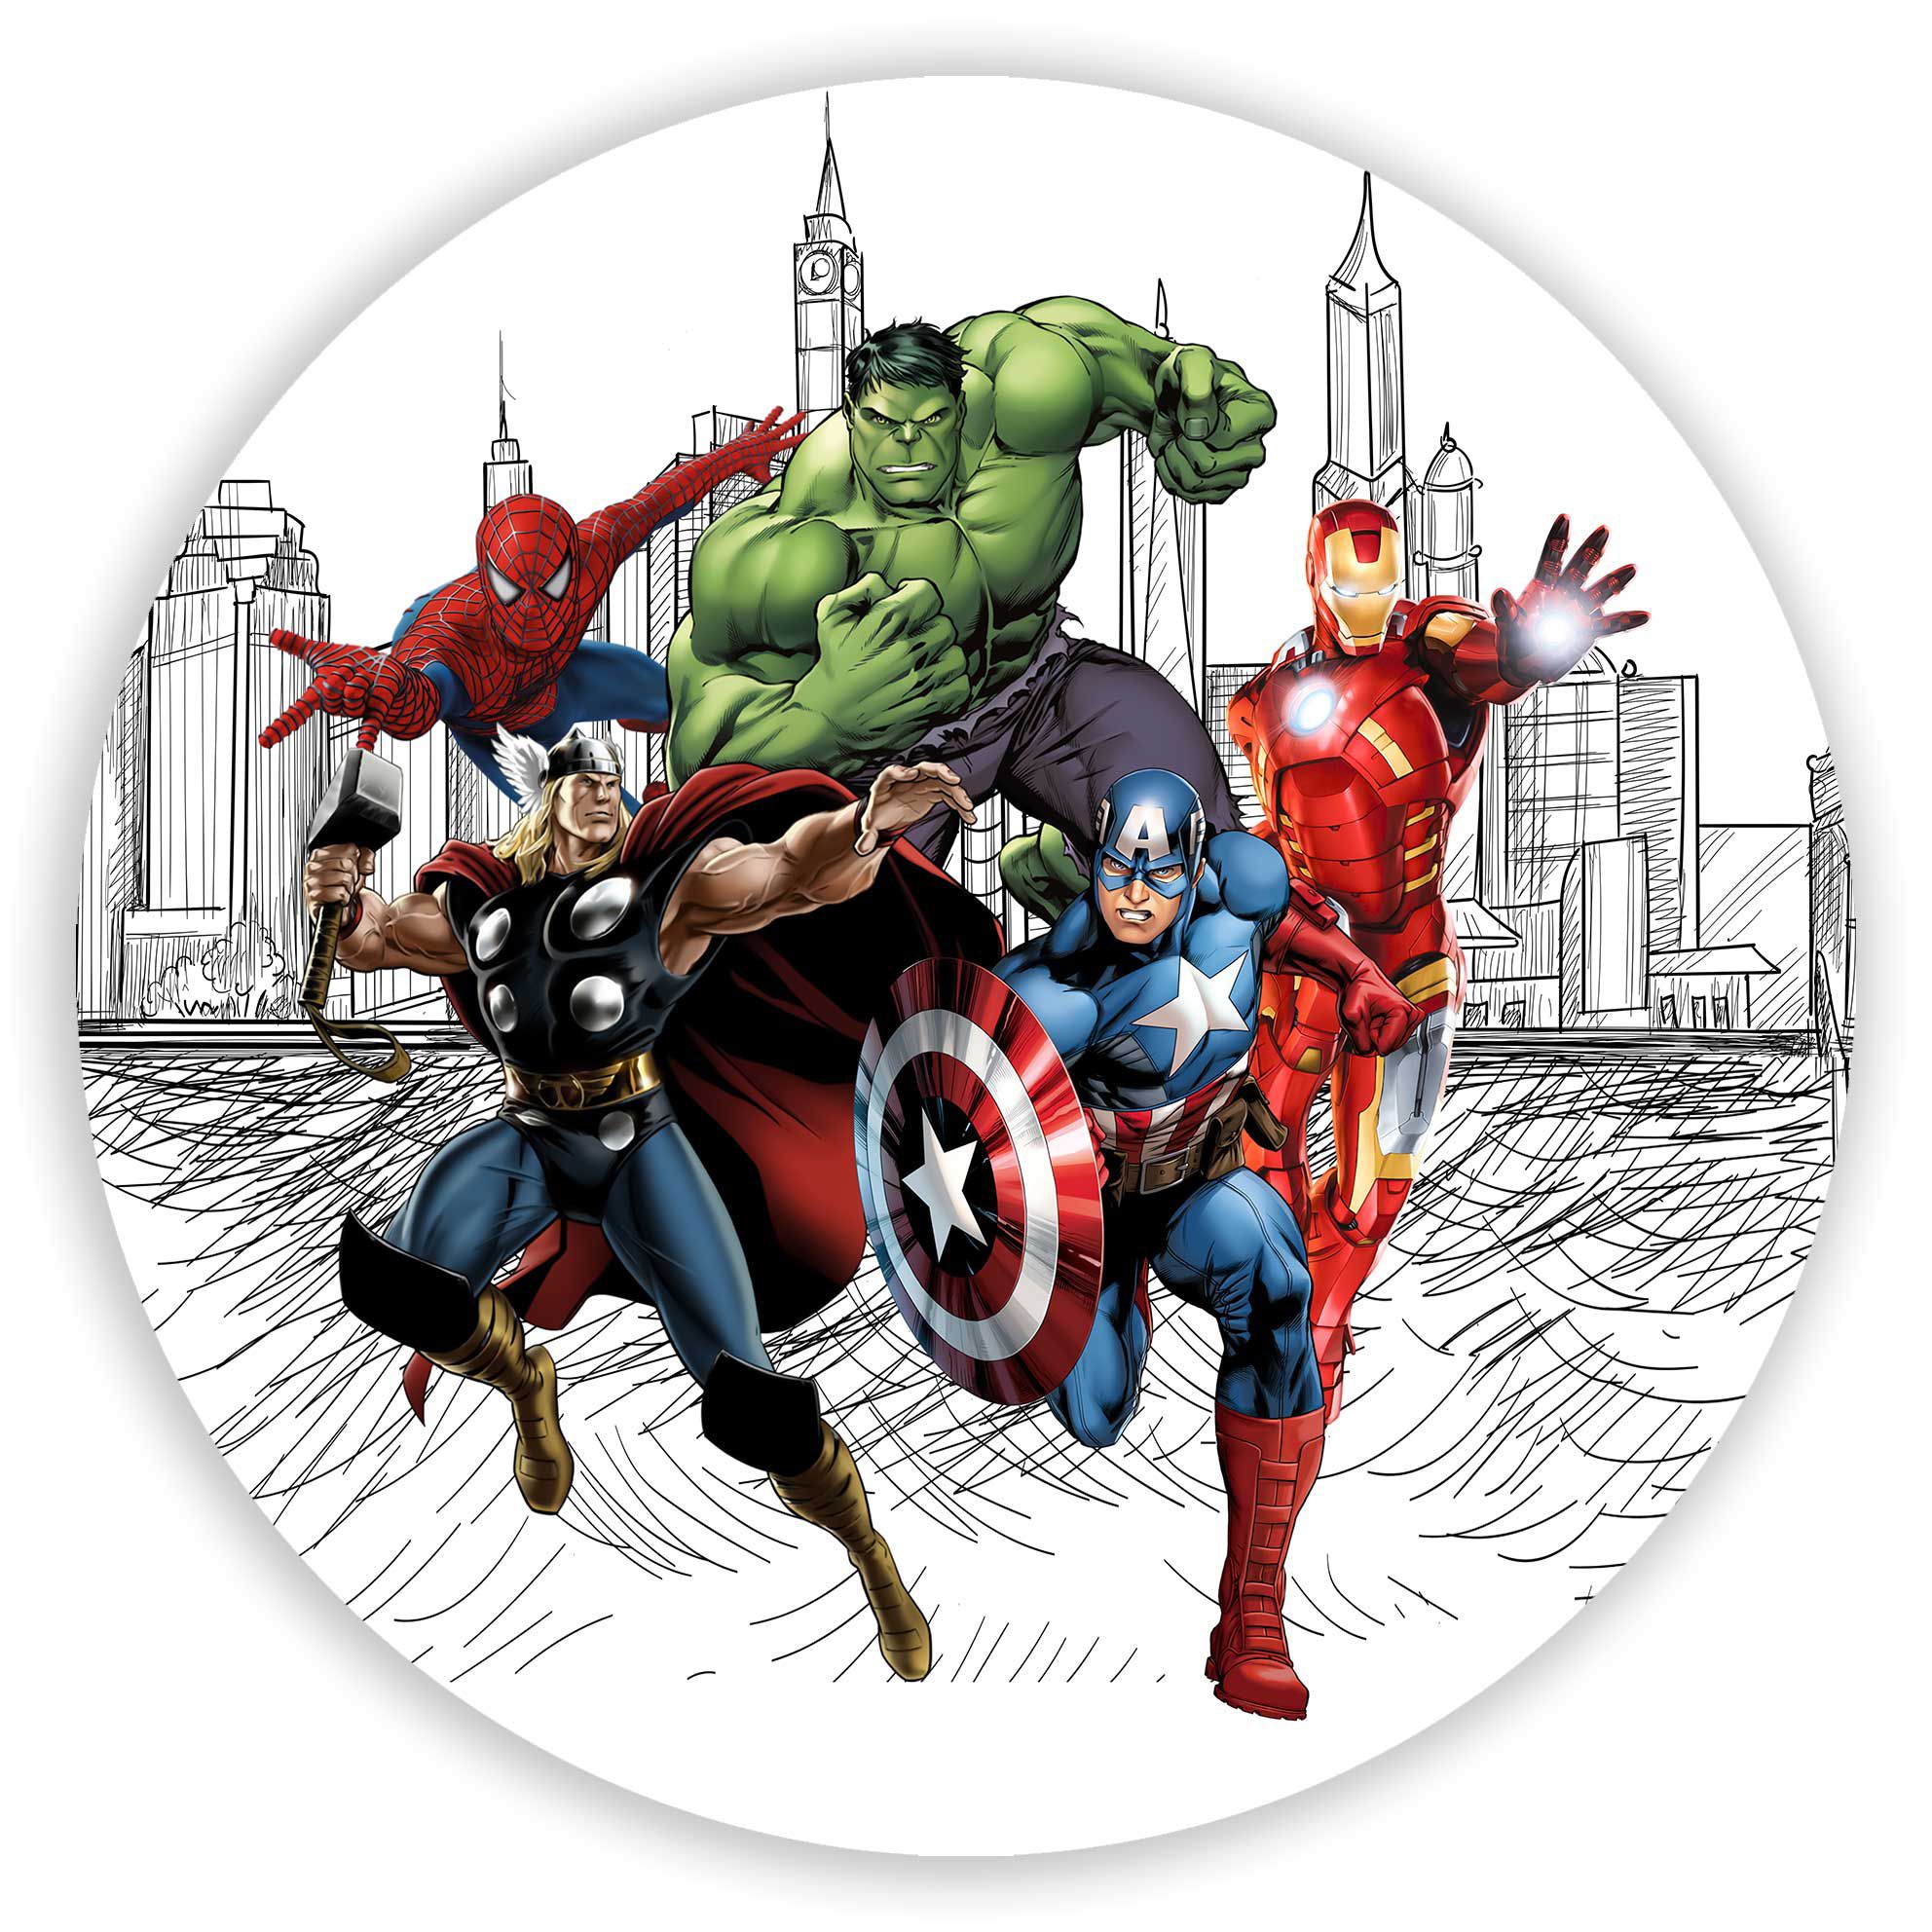 KIT Redondo e Trio - Capitã Marvel - Sublimado 3D - Sublitex, painéis  sublimados